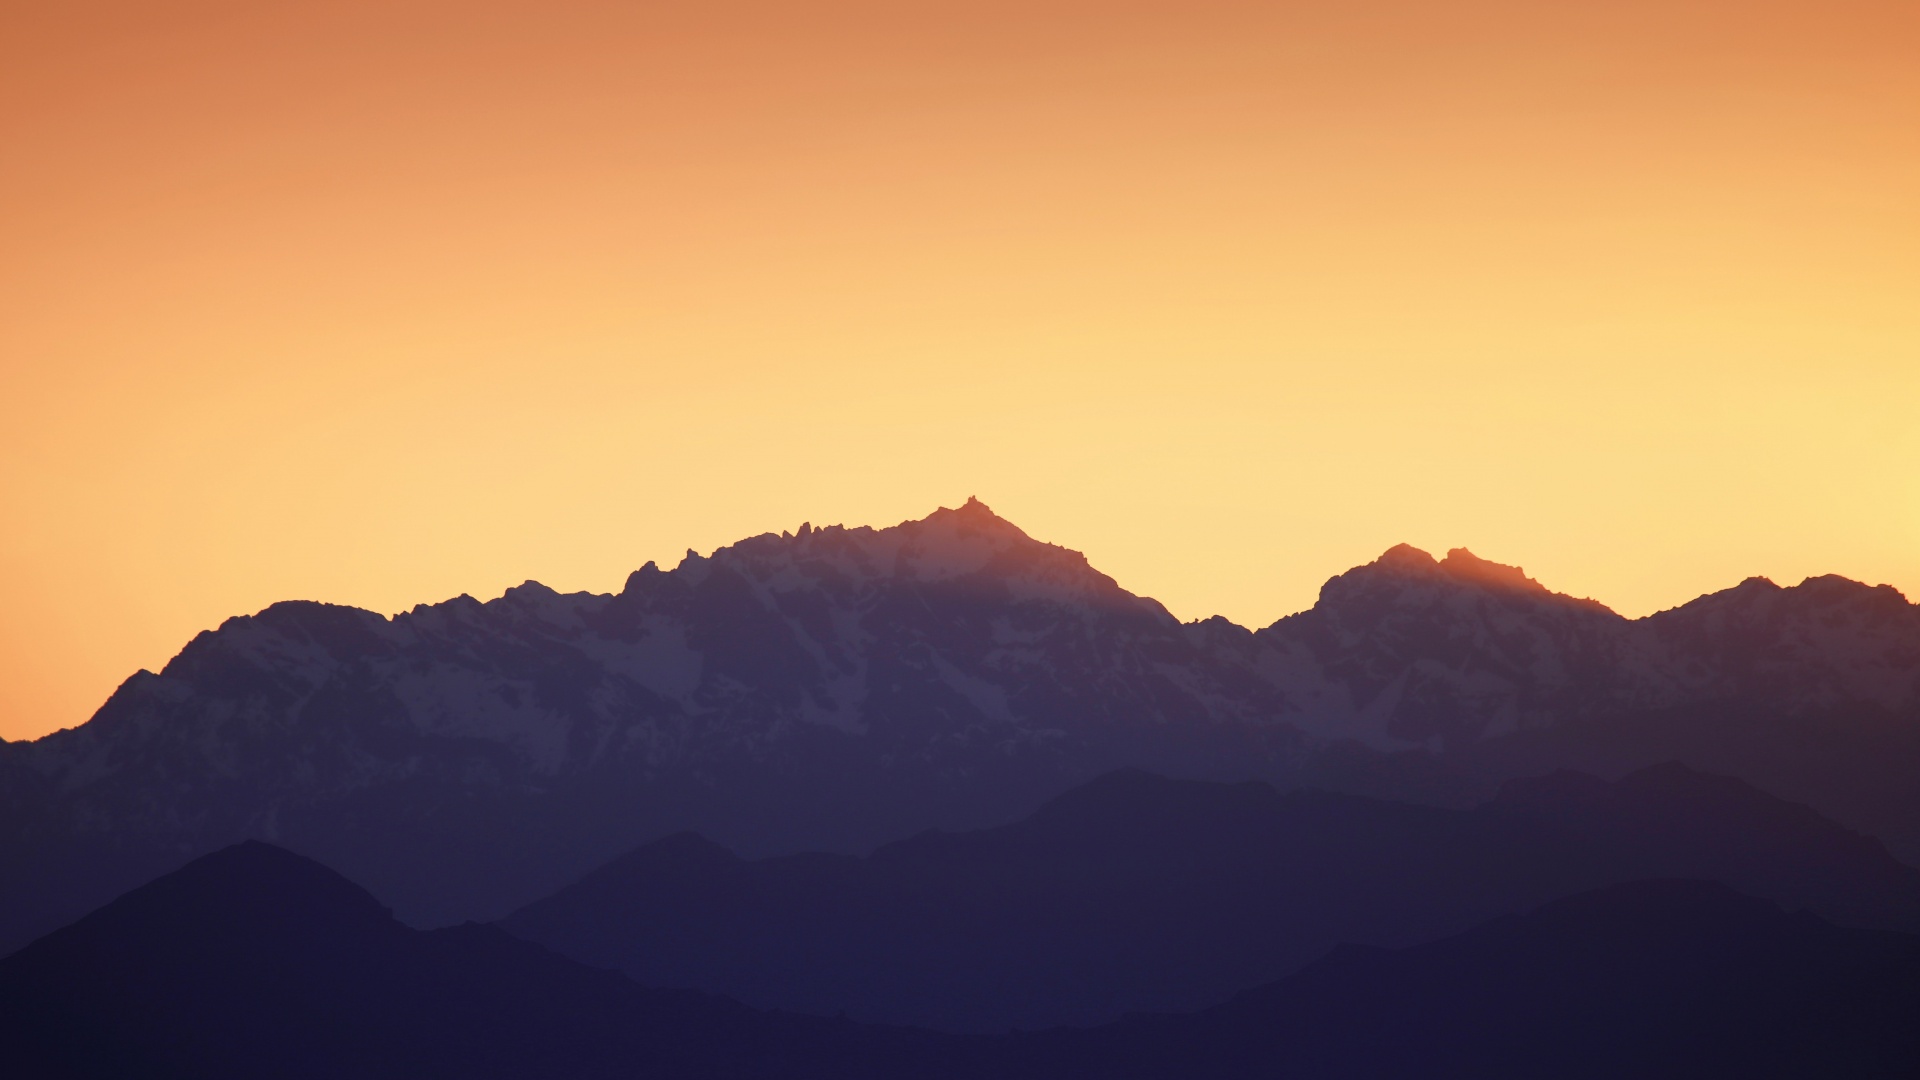 Mountains 4K Wallpaper, Sunset, Silhouette, Yellow sky, Dusk, Sunrise